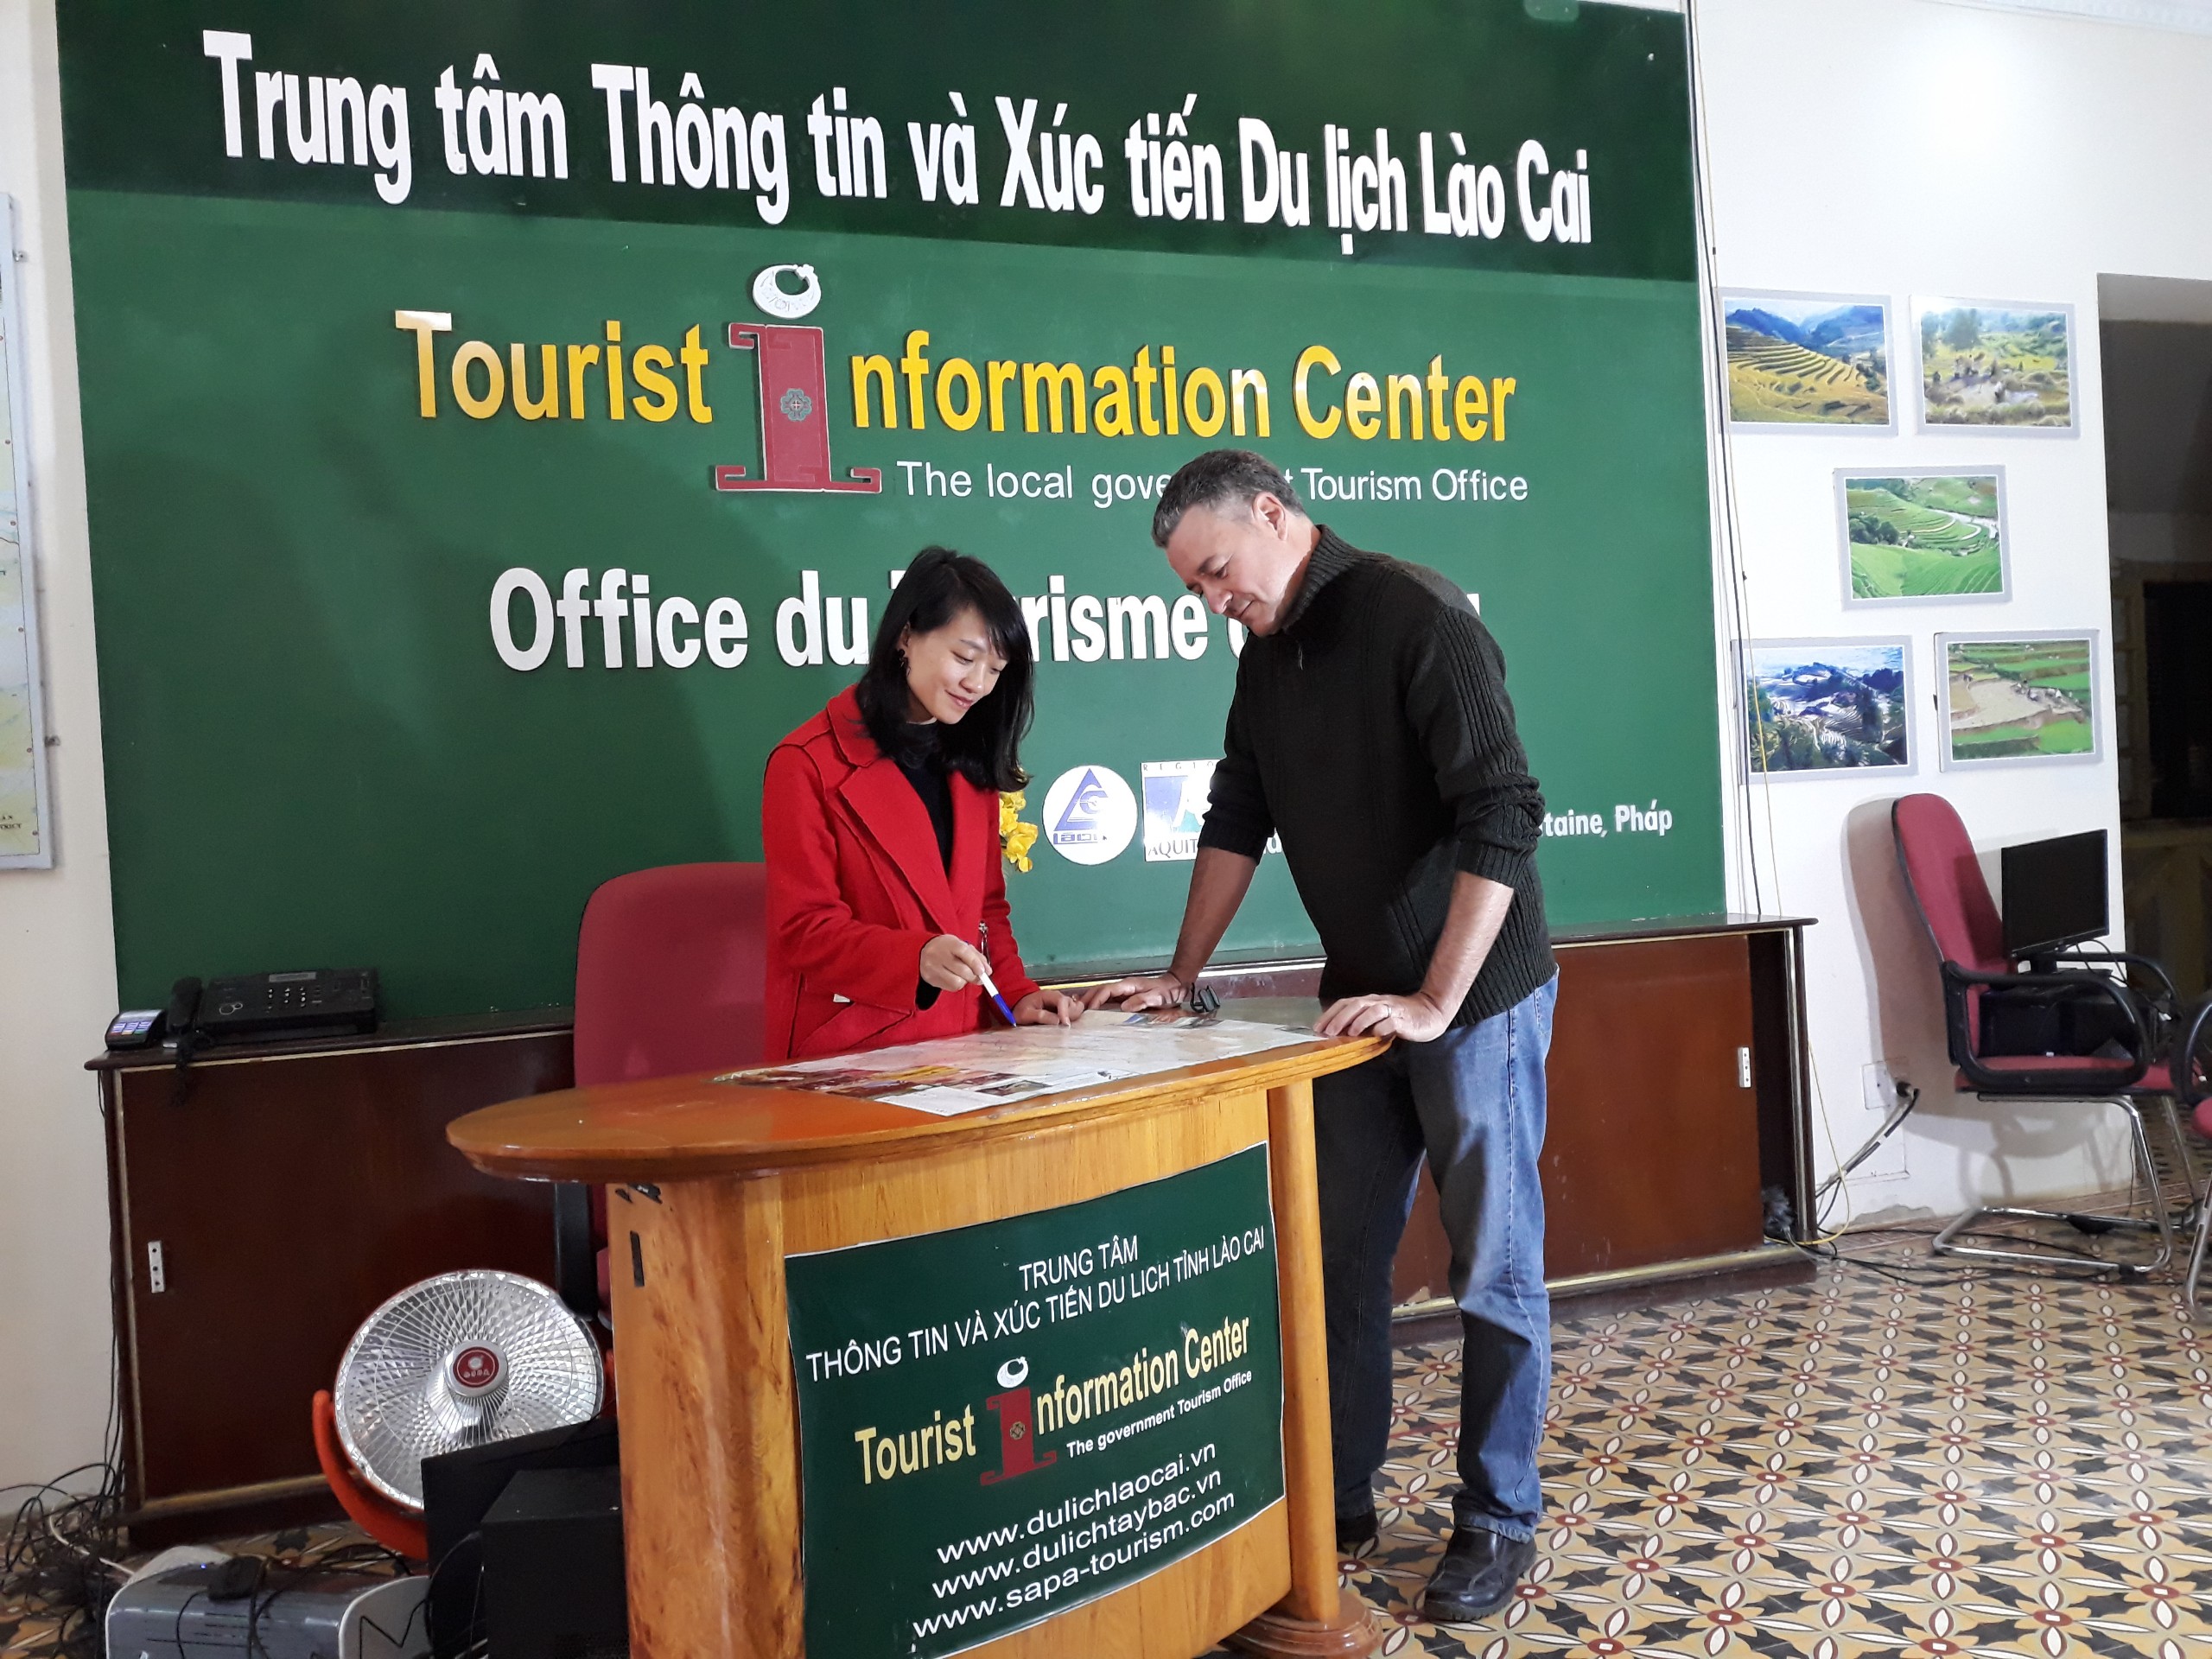 Trung tâm Thông tin và Xúc tiến Du lịch tỉnh Lào Cai